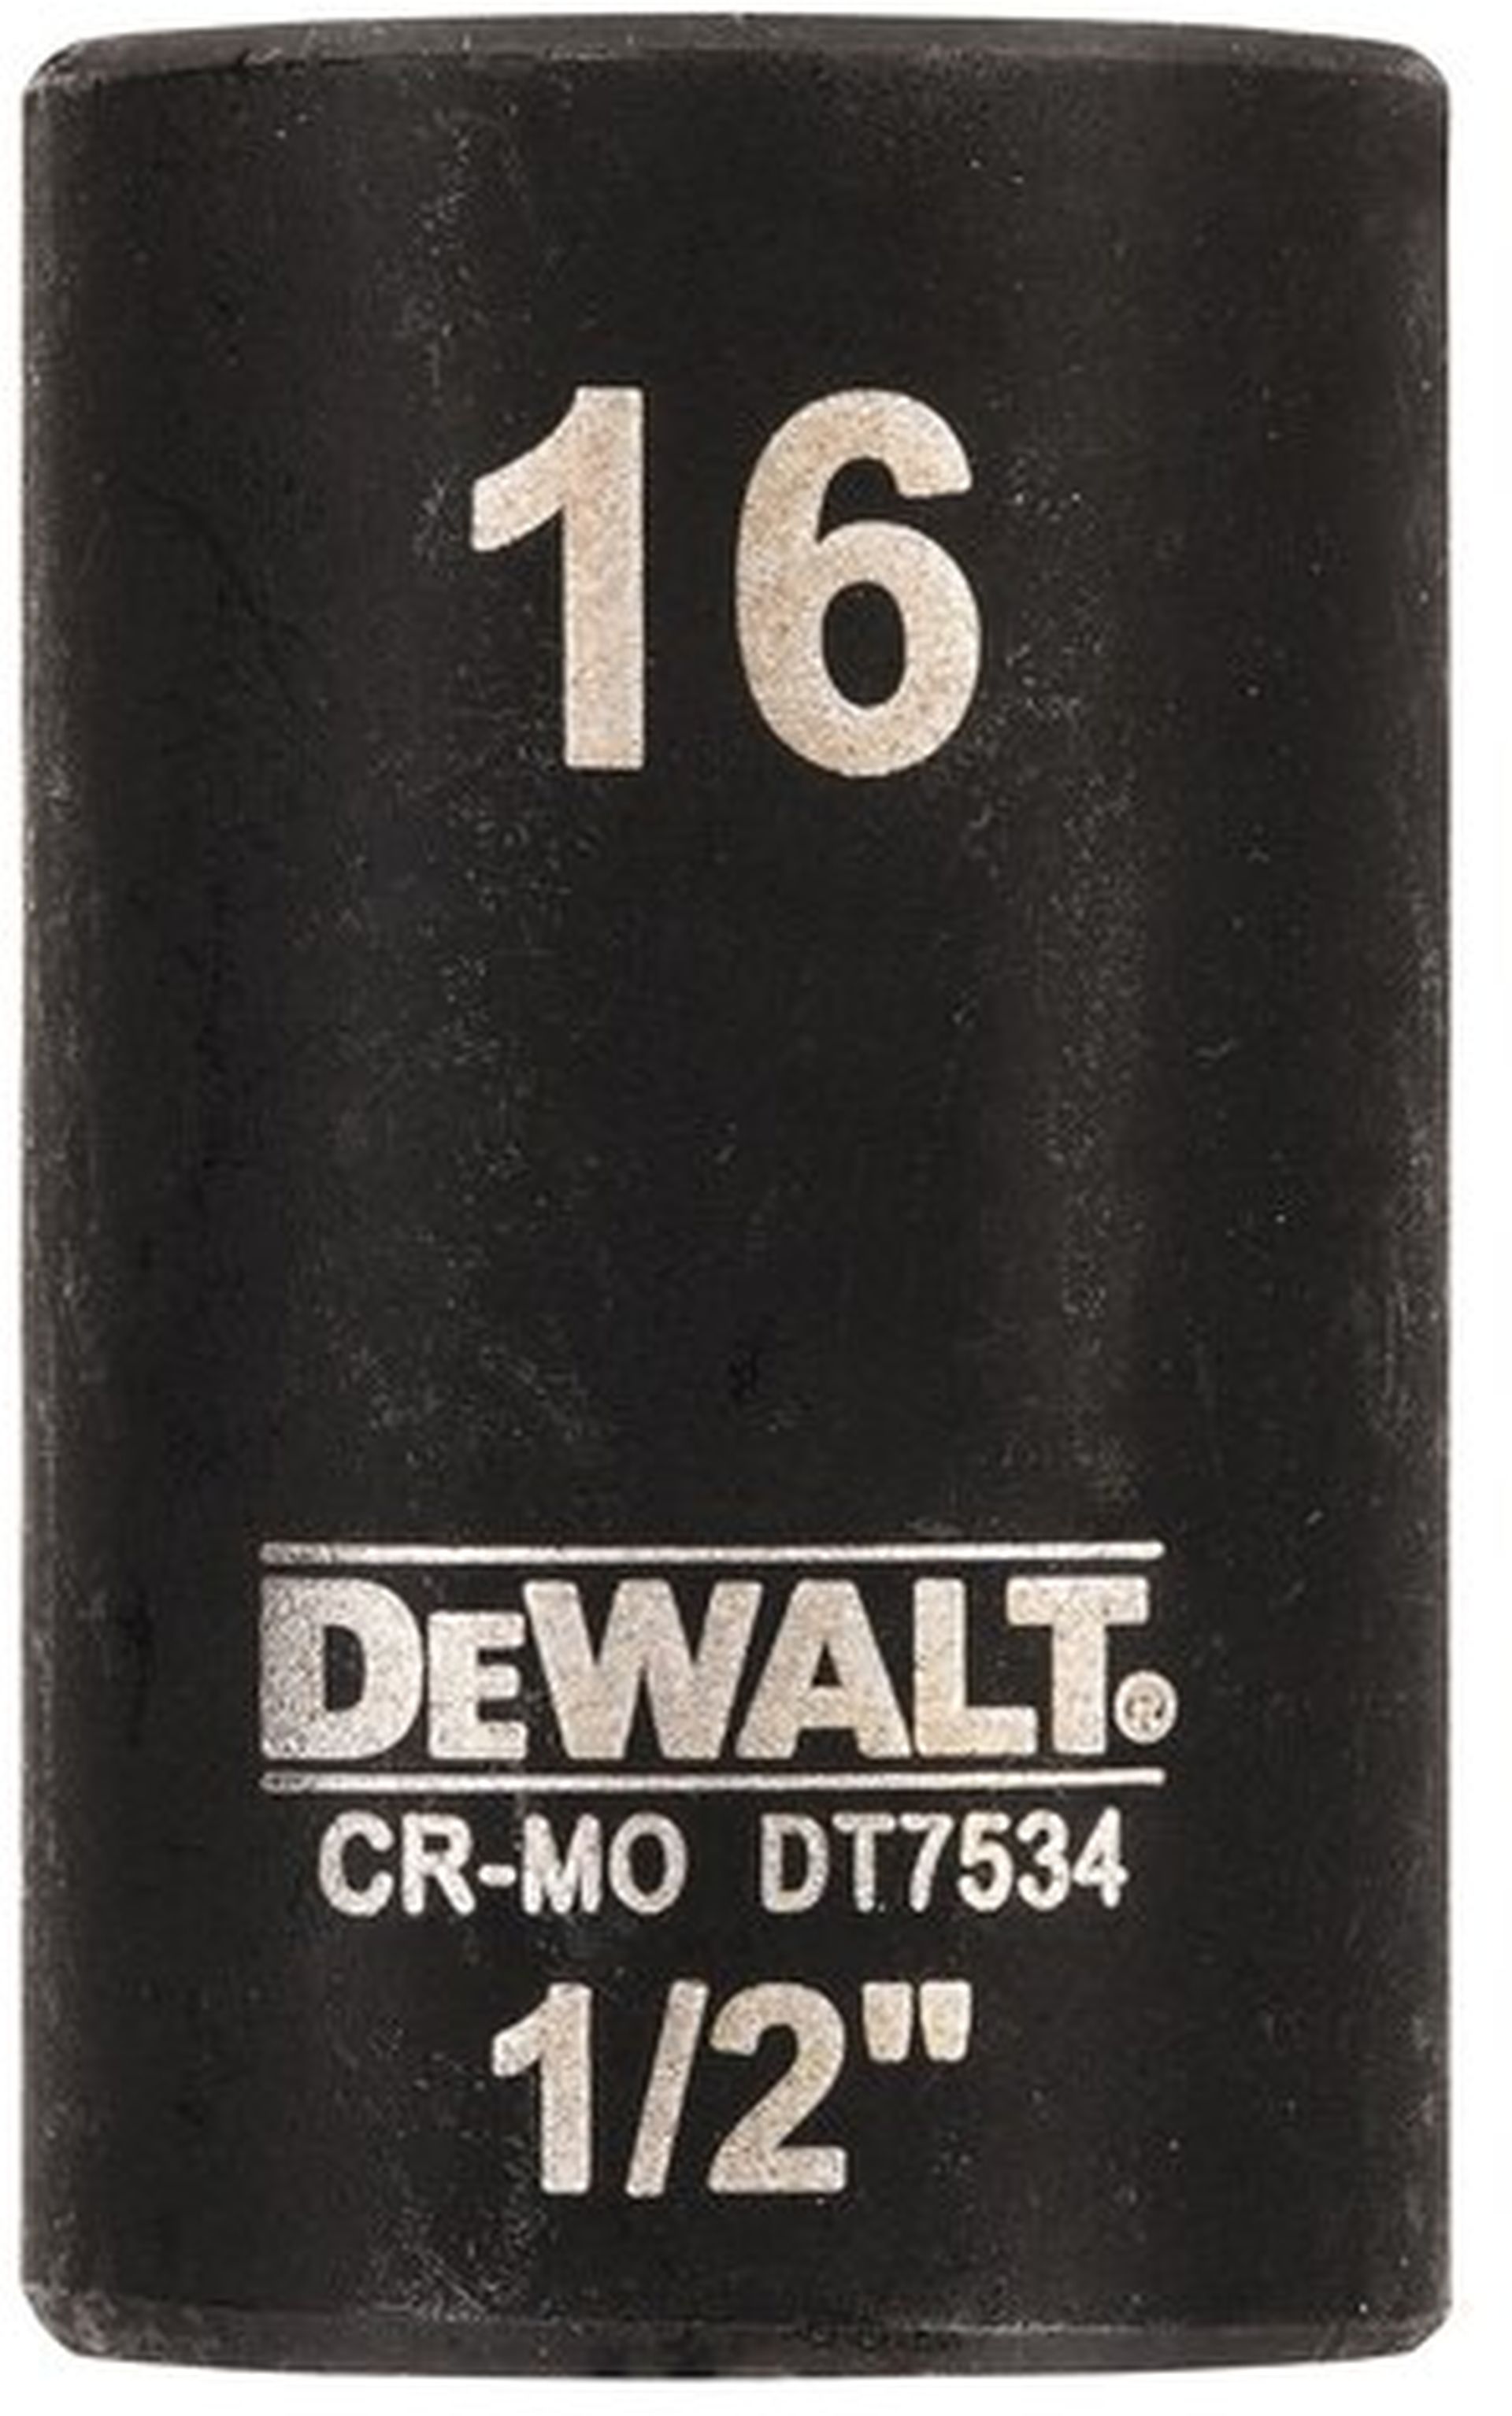 DeWALT DT7534 Nástrčná hlavice EXTREME IMPACT 1/2“ krátká, 16 mm